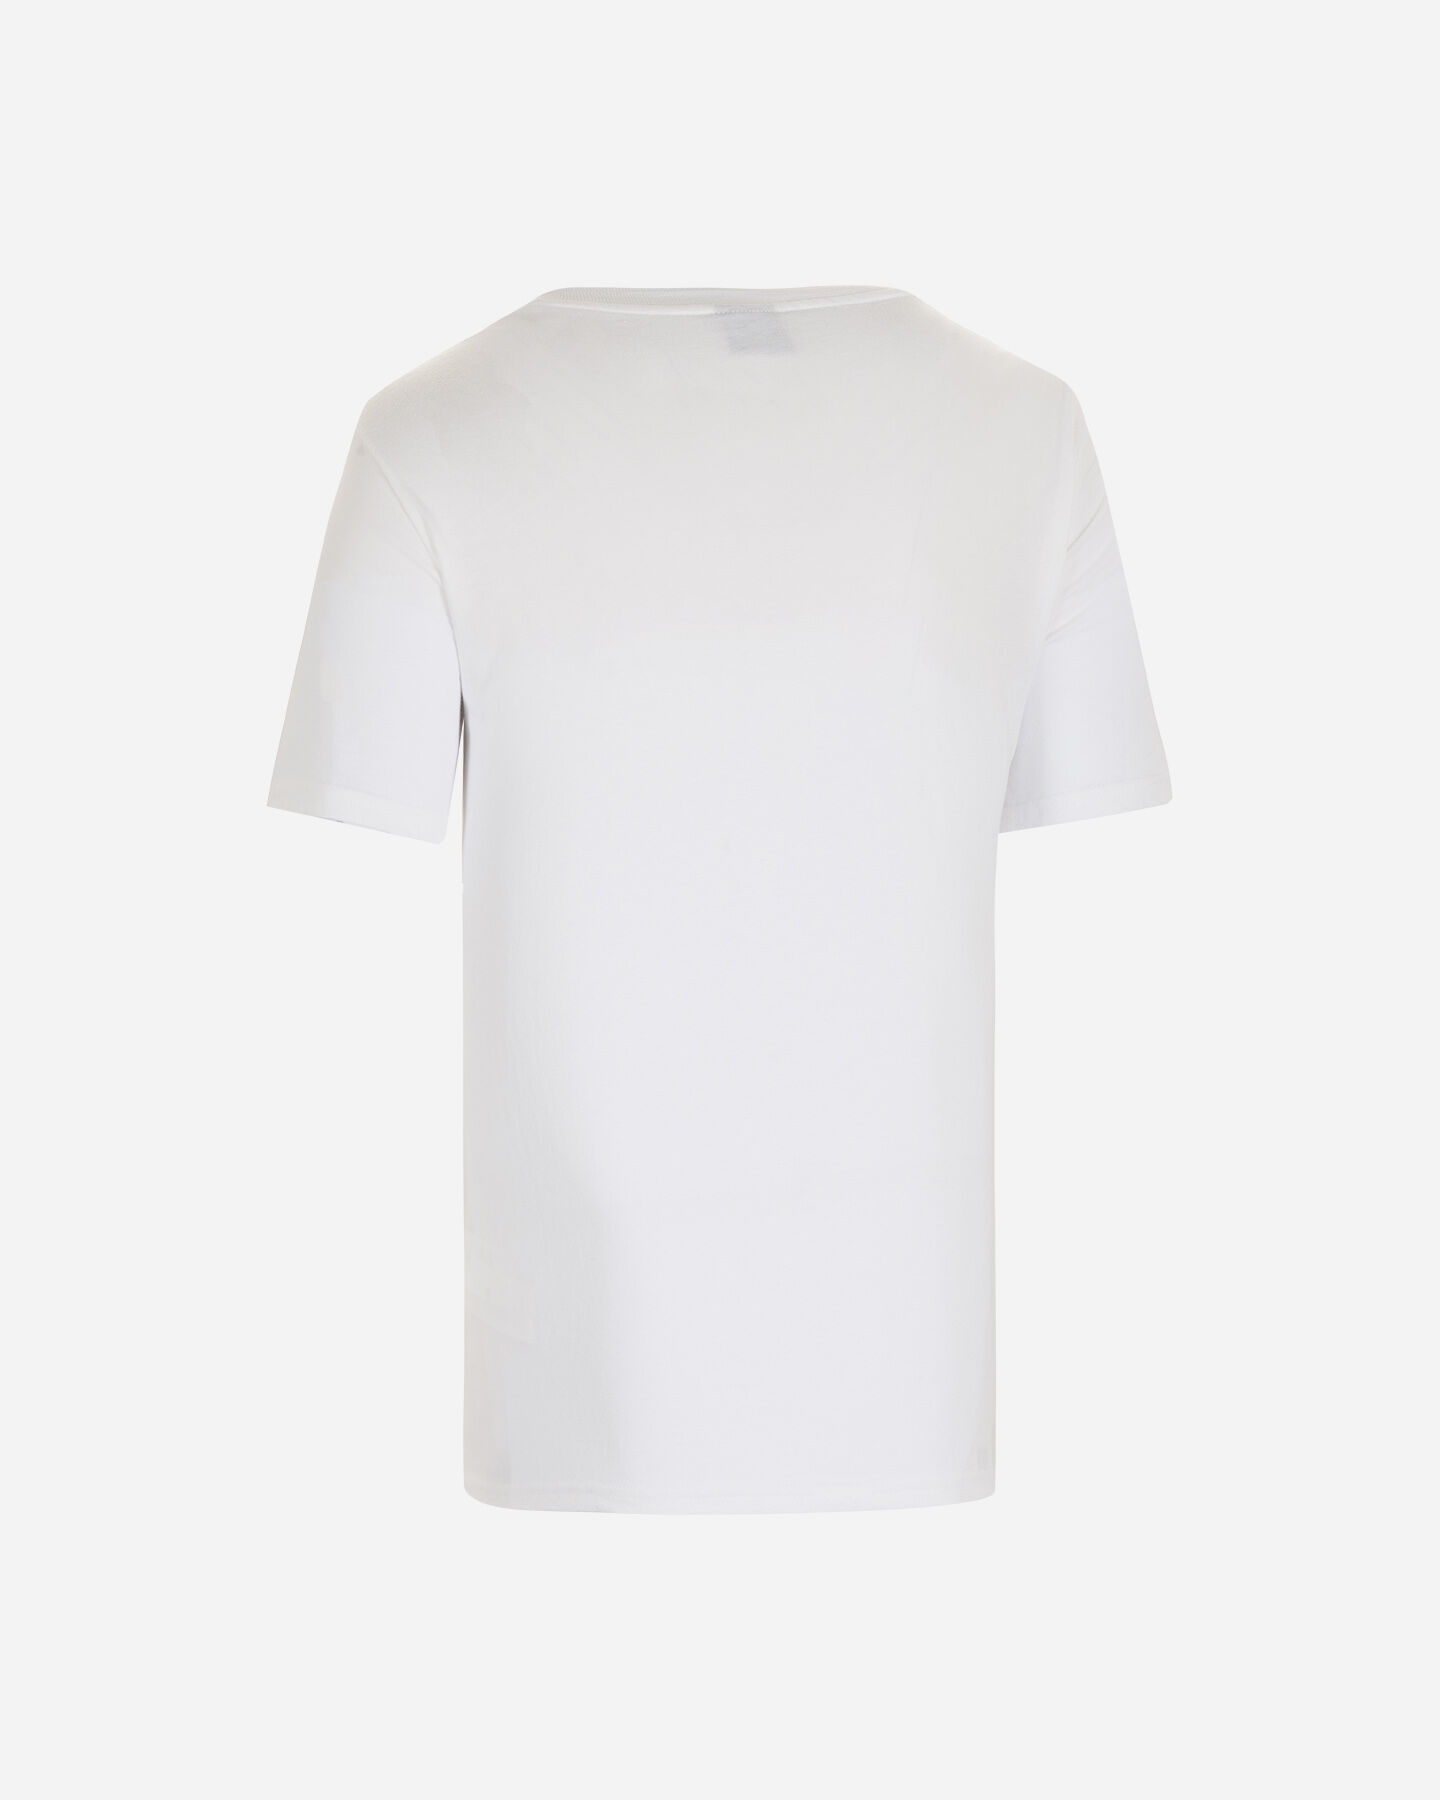  T-Shirt OAKLEY O BARK 2.0 M S5481357|100|XS scatto 1